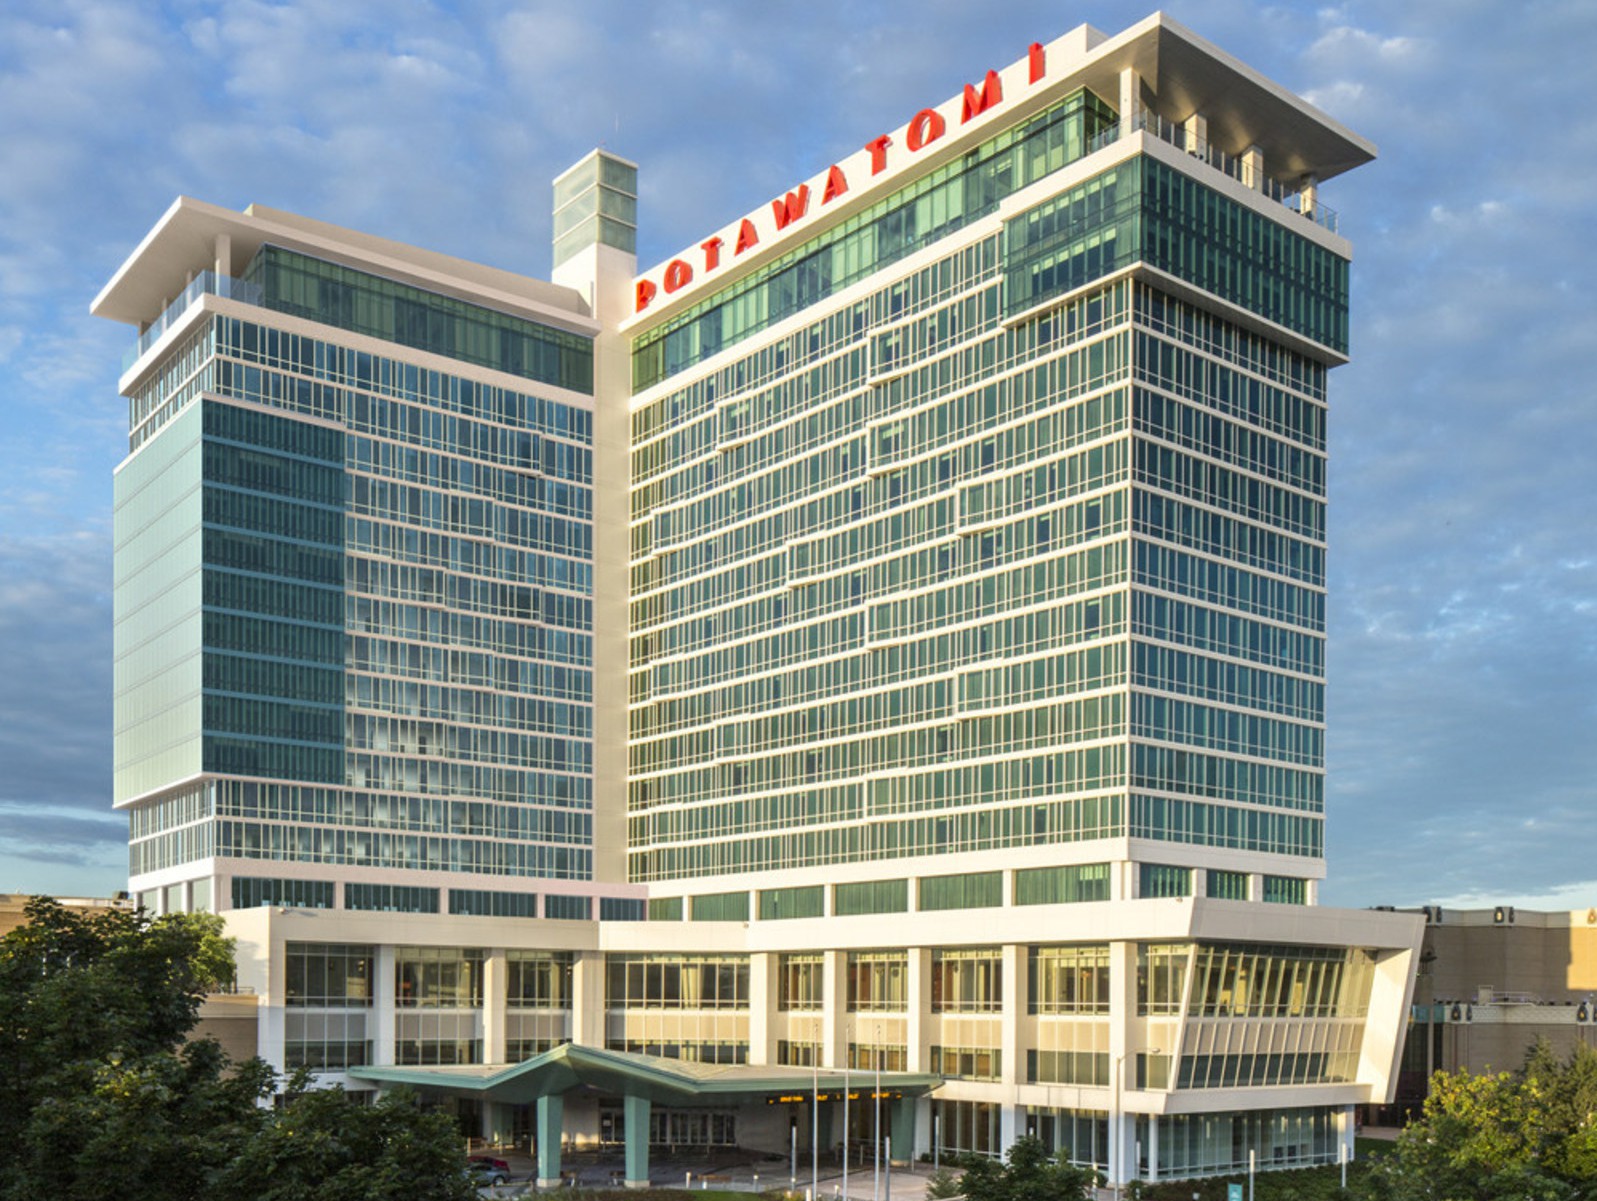 Potawatomi Hotel Expansion rendering